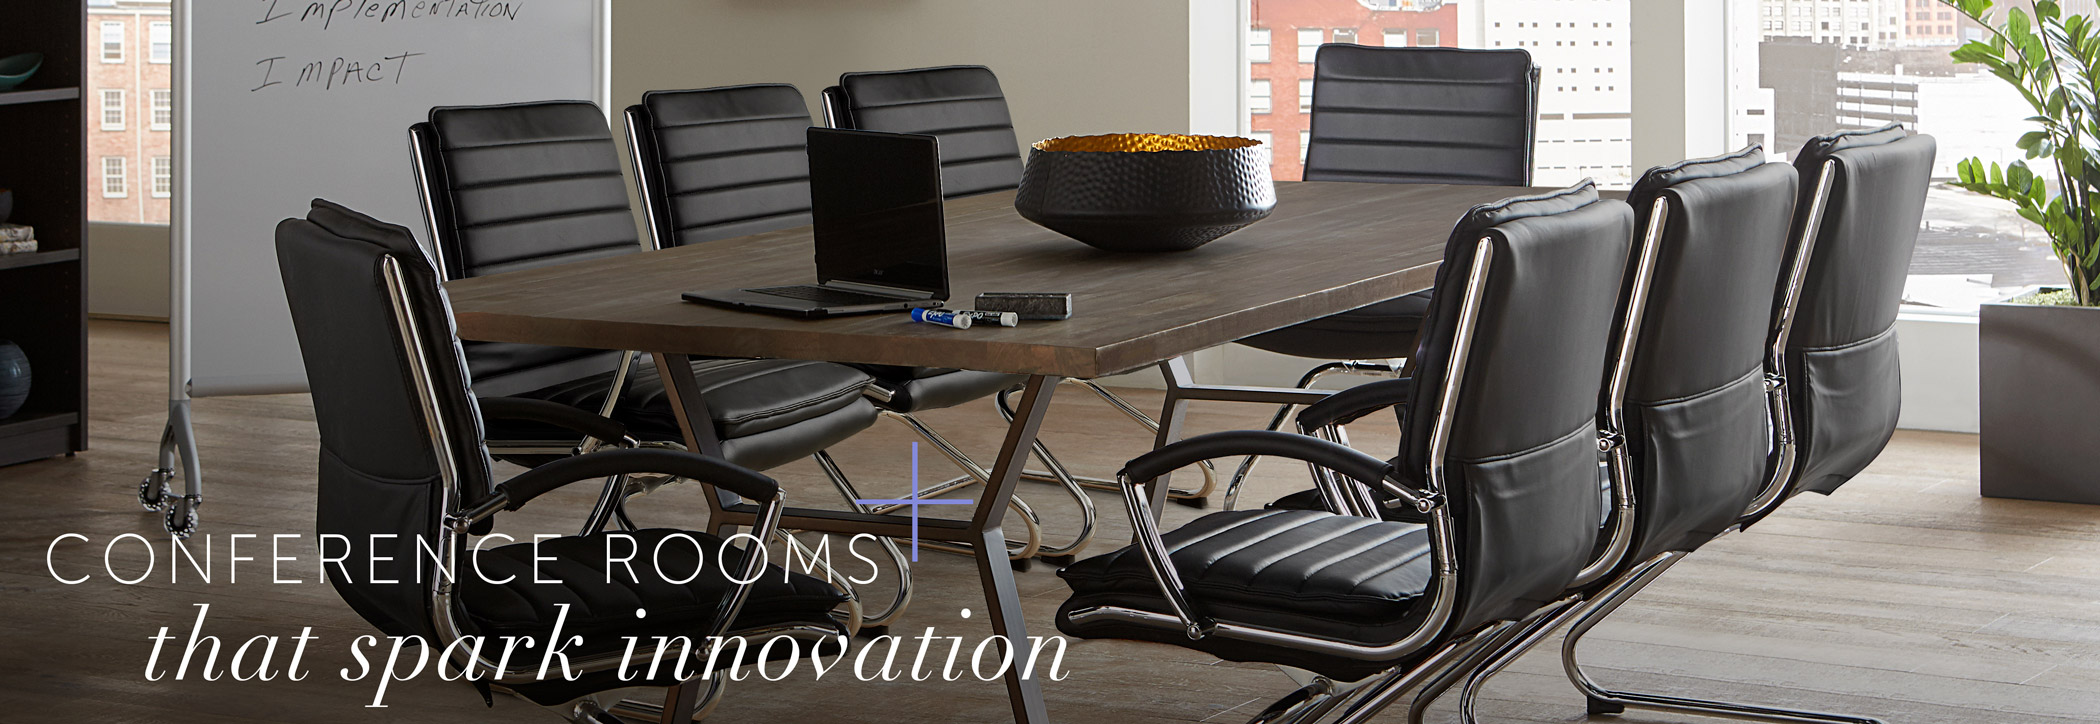 租用的会议桌上写着“激发创新的会议室”